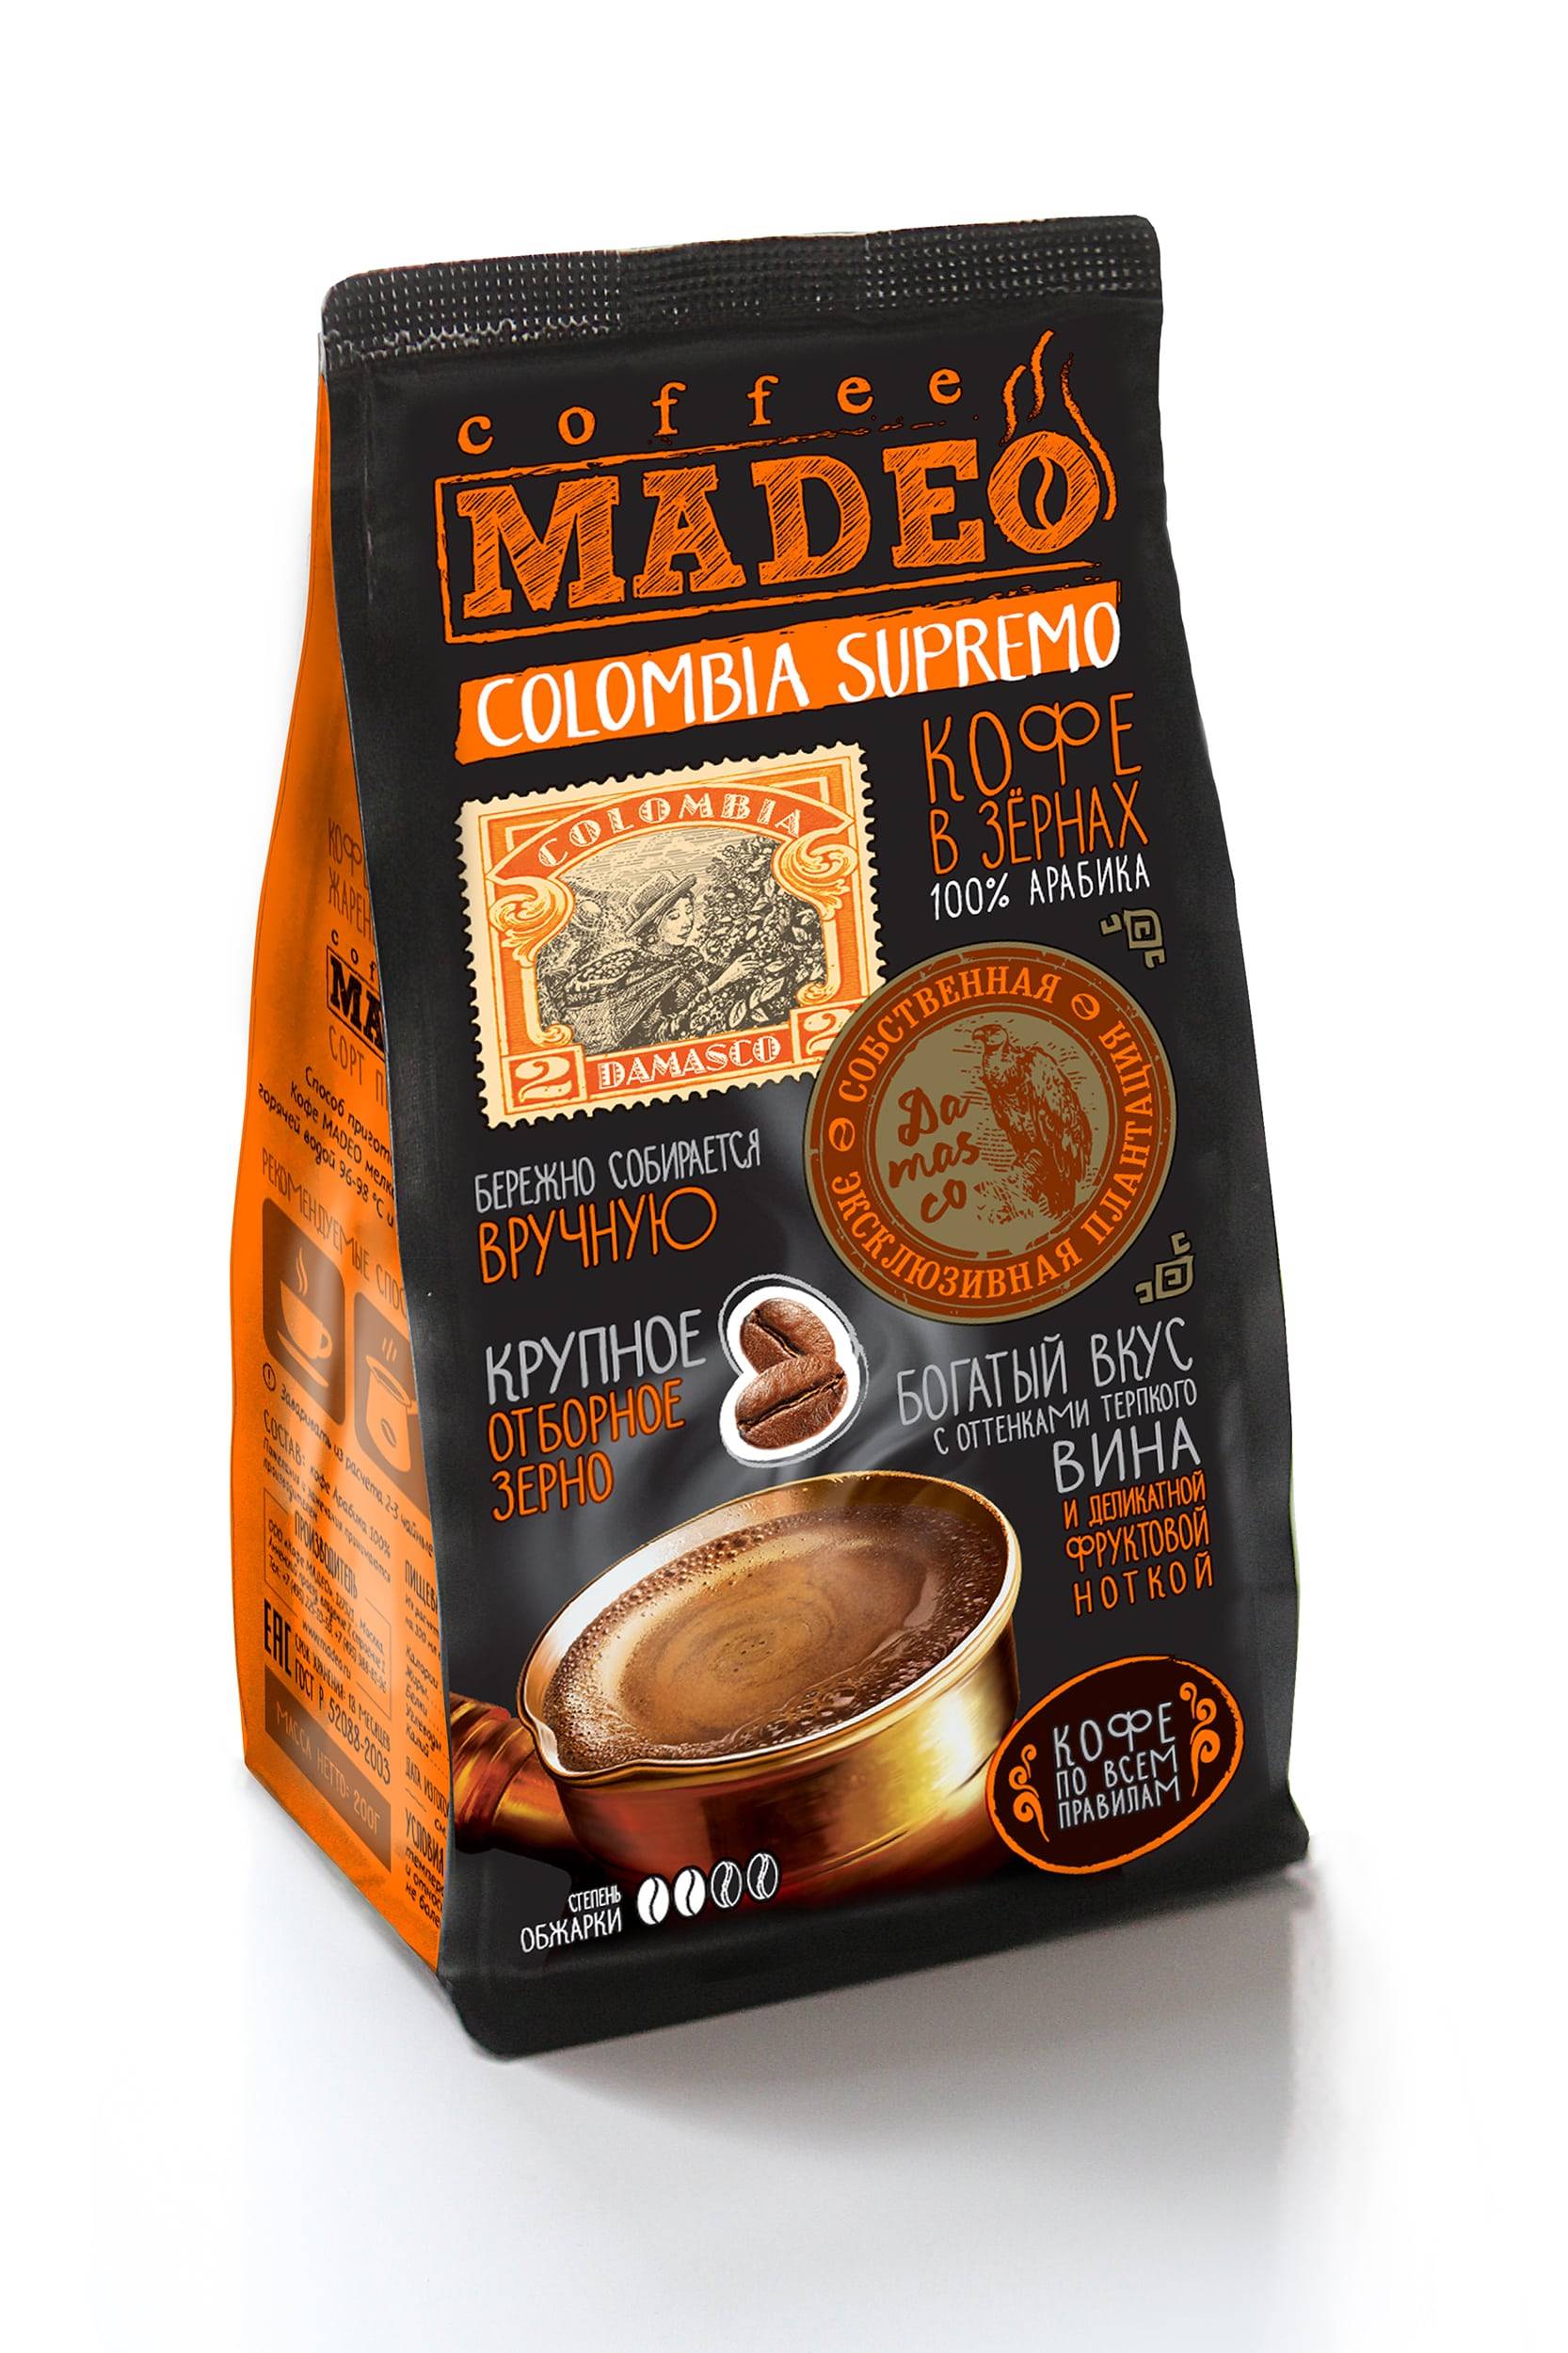 Кофе мадео (madeo) - бренд, ассортимент, отзывы и цены